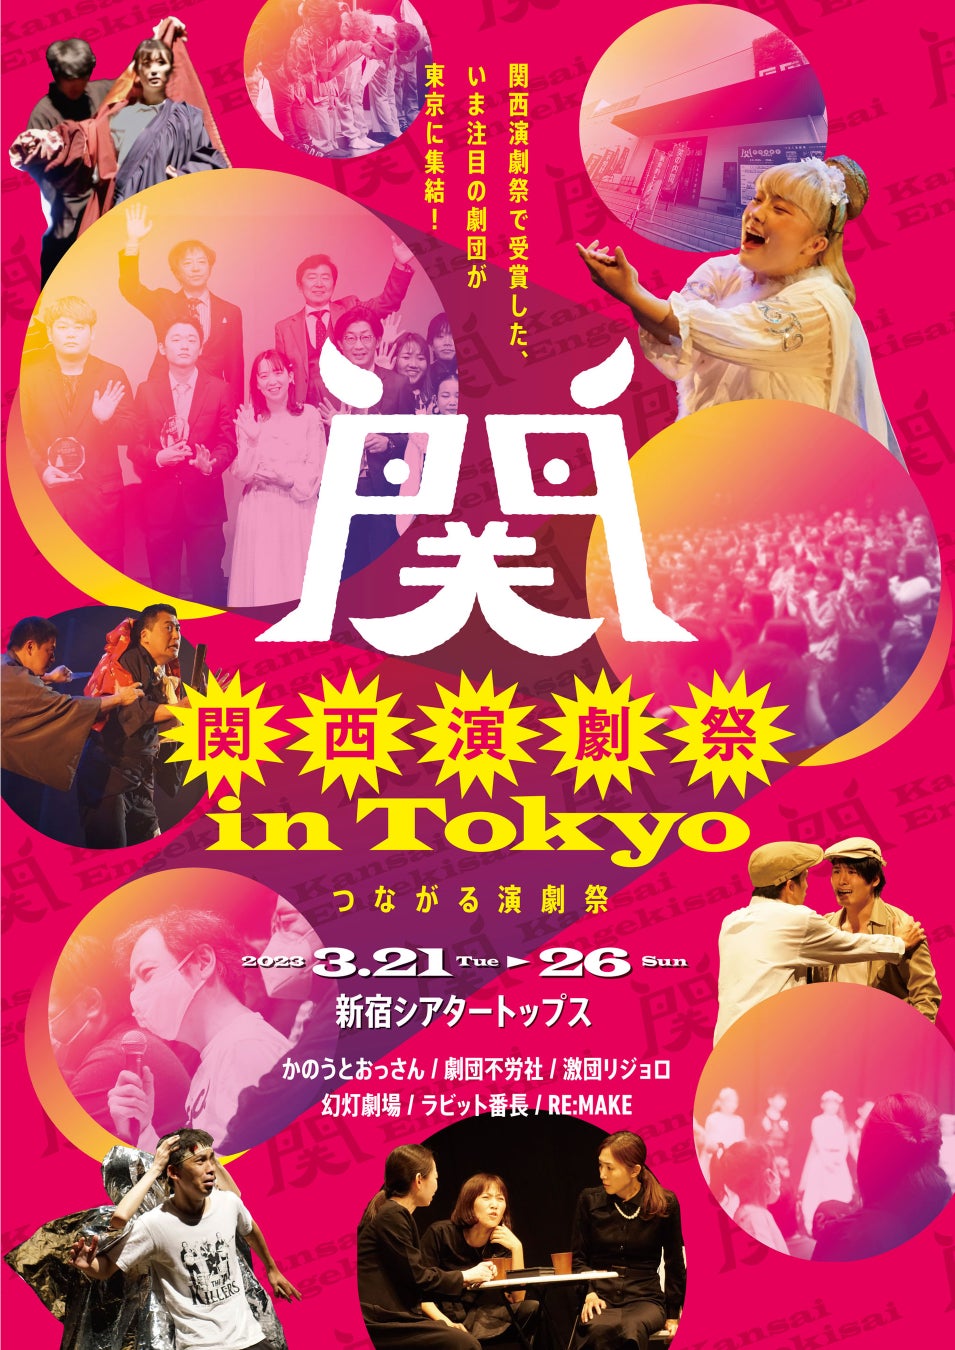 さまざまな形で“つながる”をテーマに毎年大阪で開催している関西演劇祭。3月に東京でプロデュース公演を開催！！関西演劇祭　in  Tokyo